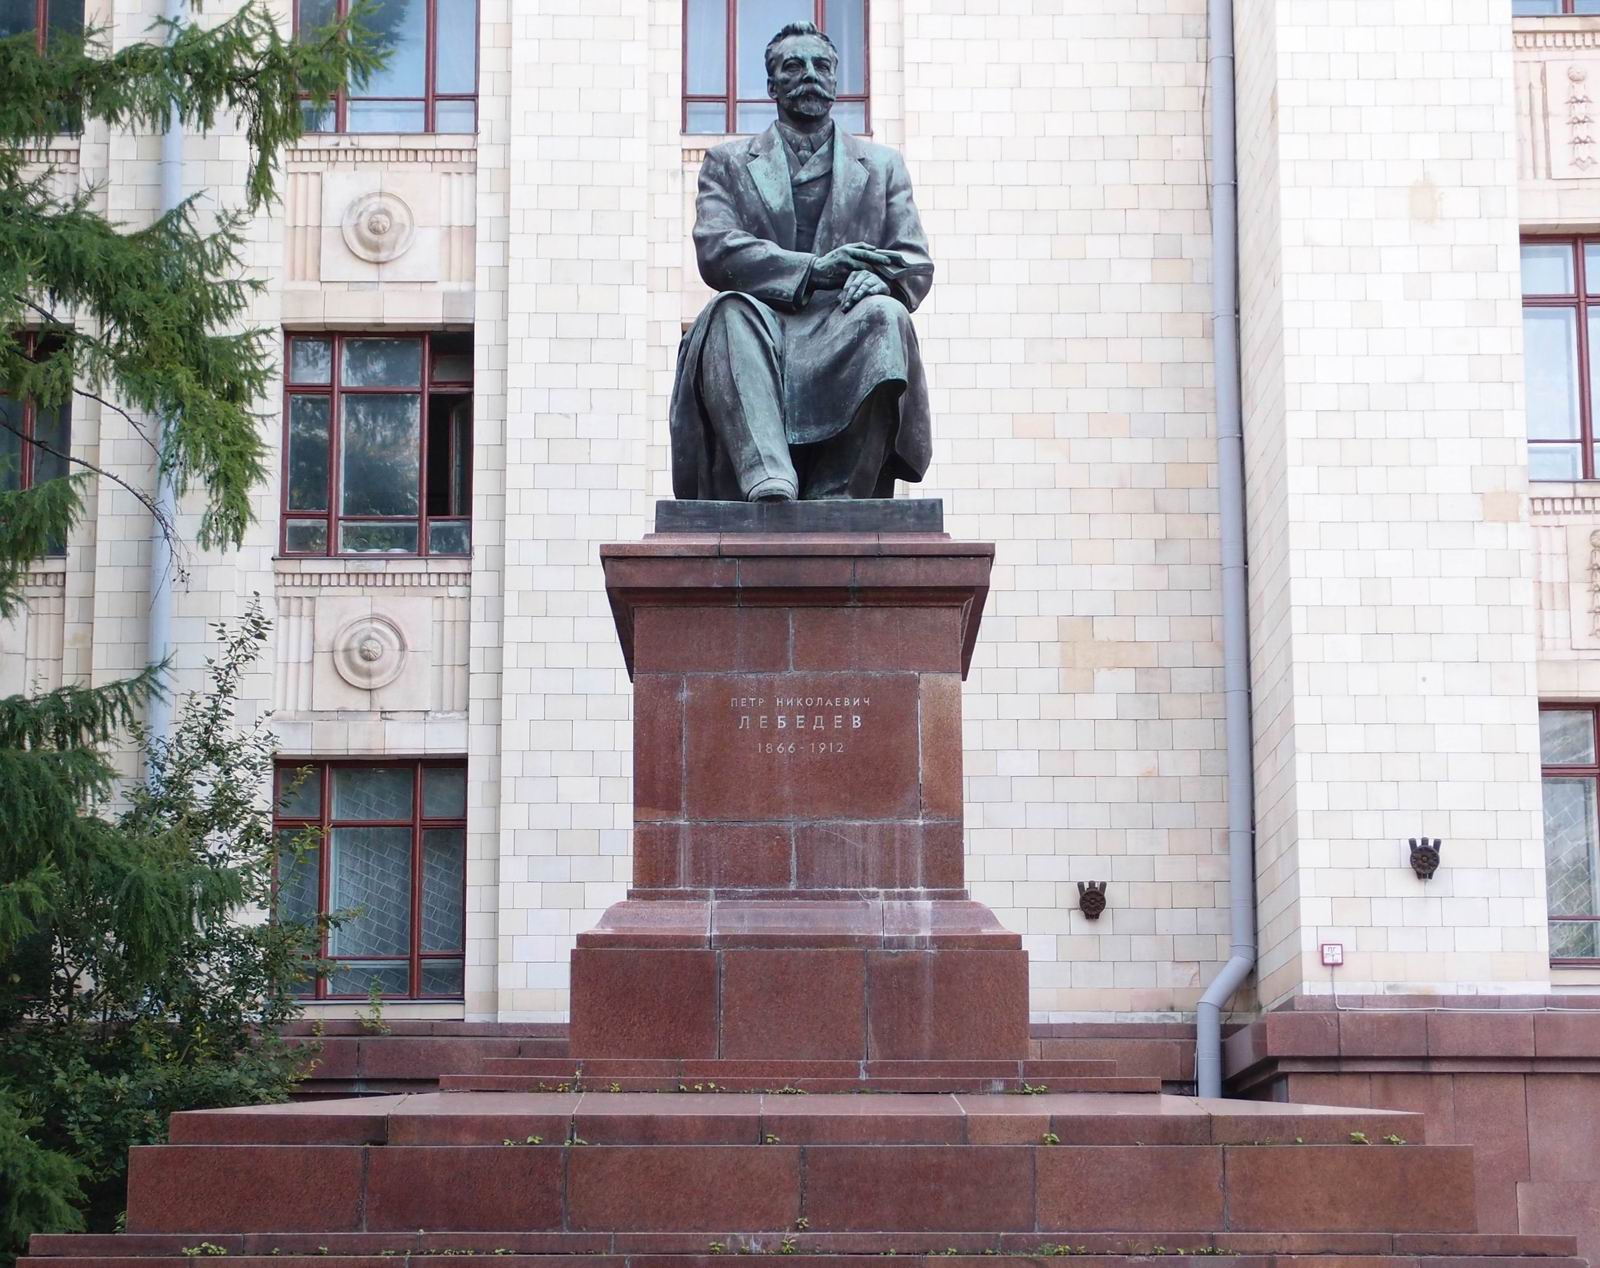 Памятник Лебедеву П.Н. (1866–1912), ск. А.К.Глебов, на Ленинских горах, возле корпуса Физического факультета МГУ им. М.В.Ломоносова, открыт в 1953.